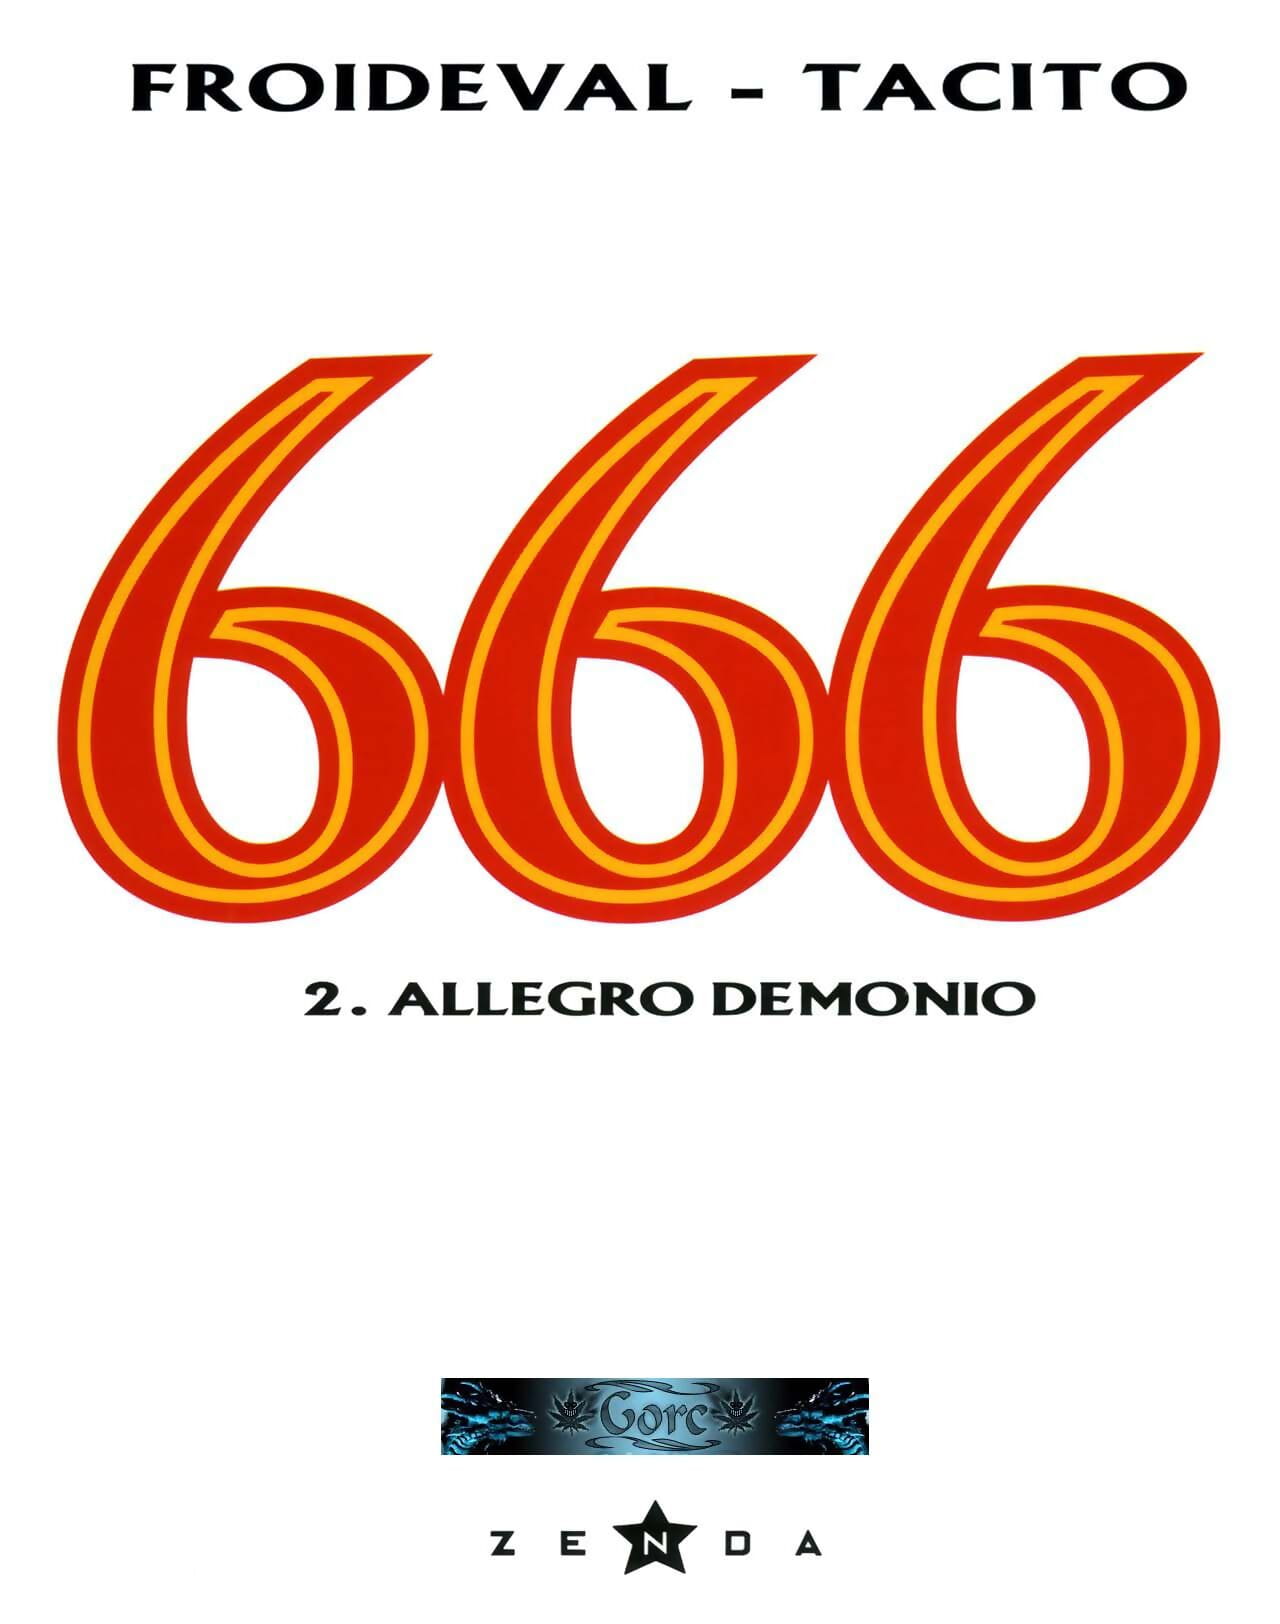 666 tom 2 Allegro демонио